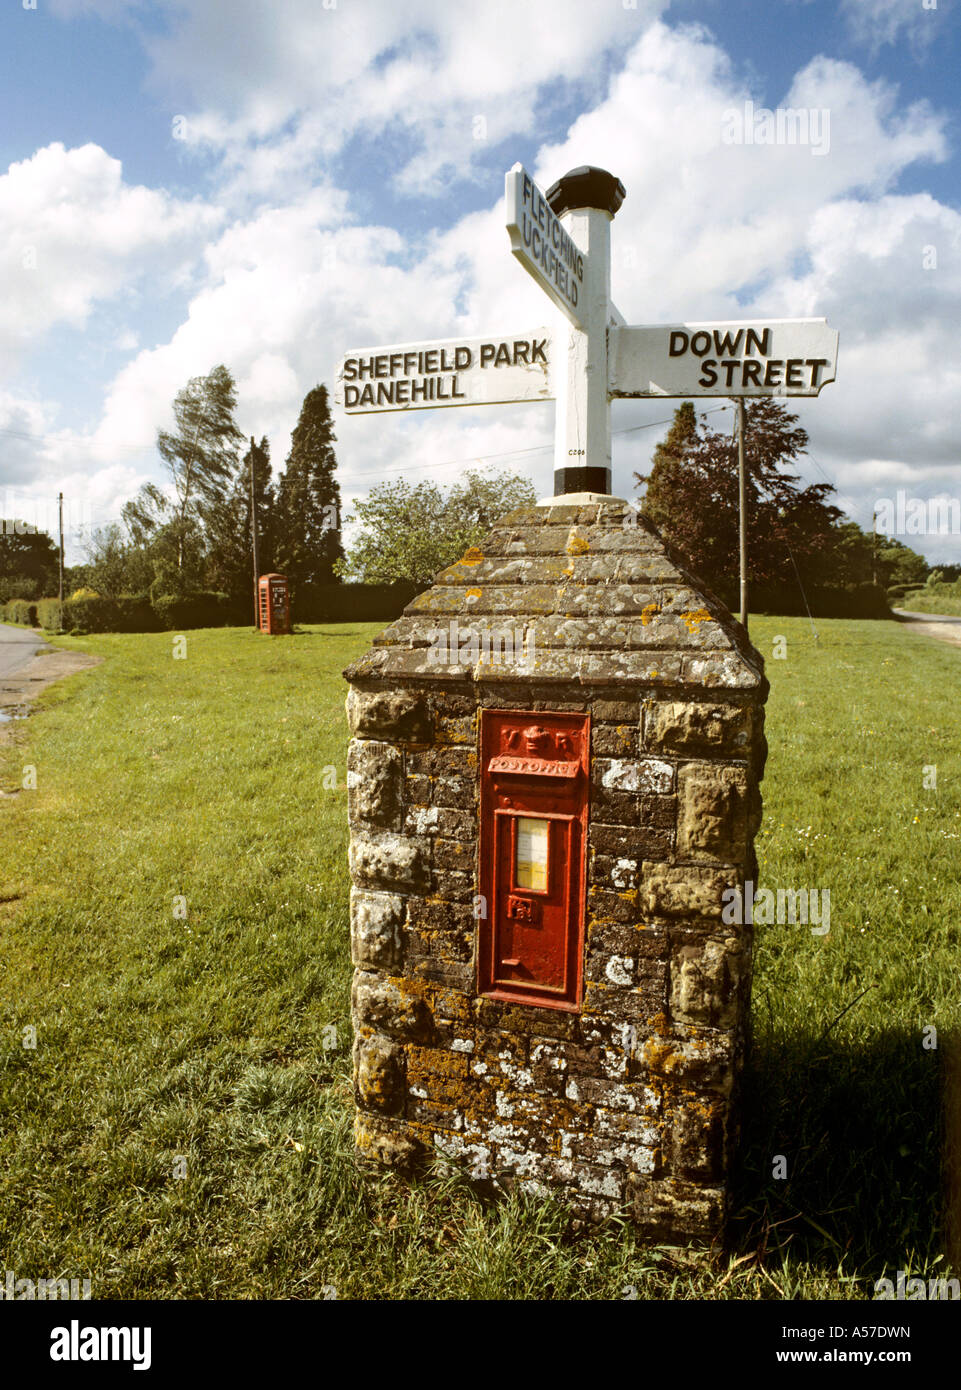 Regno Unito East Sussex Fletching K6 casella Telefono sul verde villaggio al di là di insolita cum signpost casella postale Foto Stock